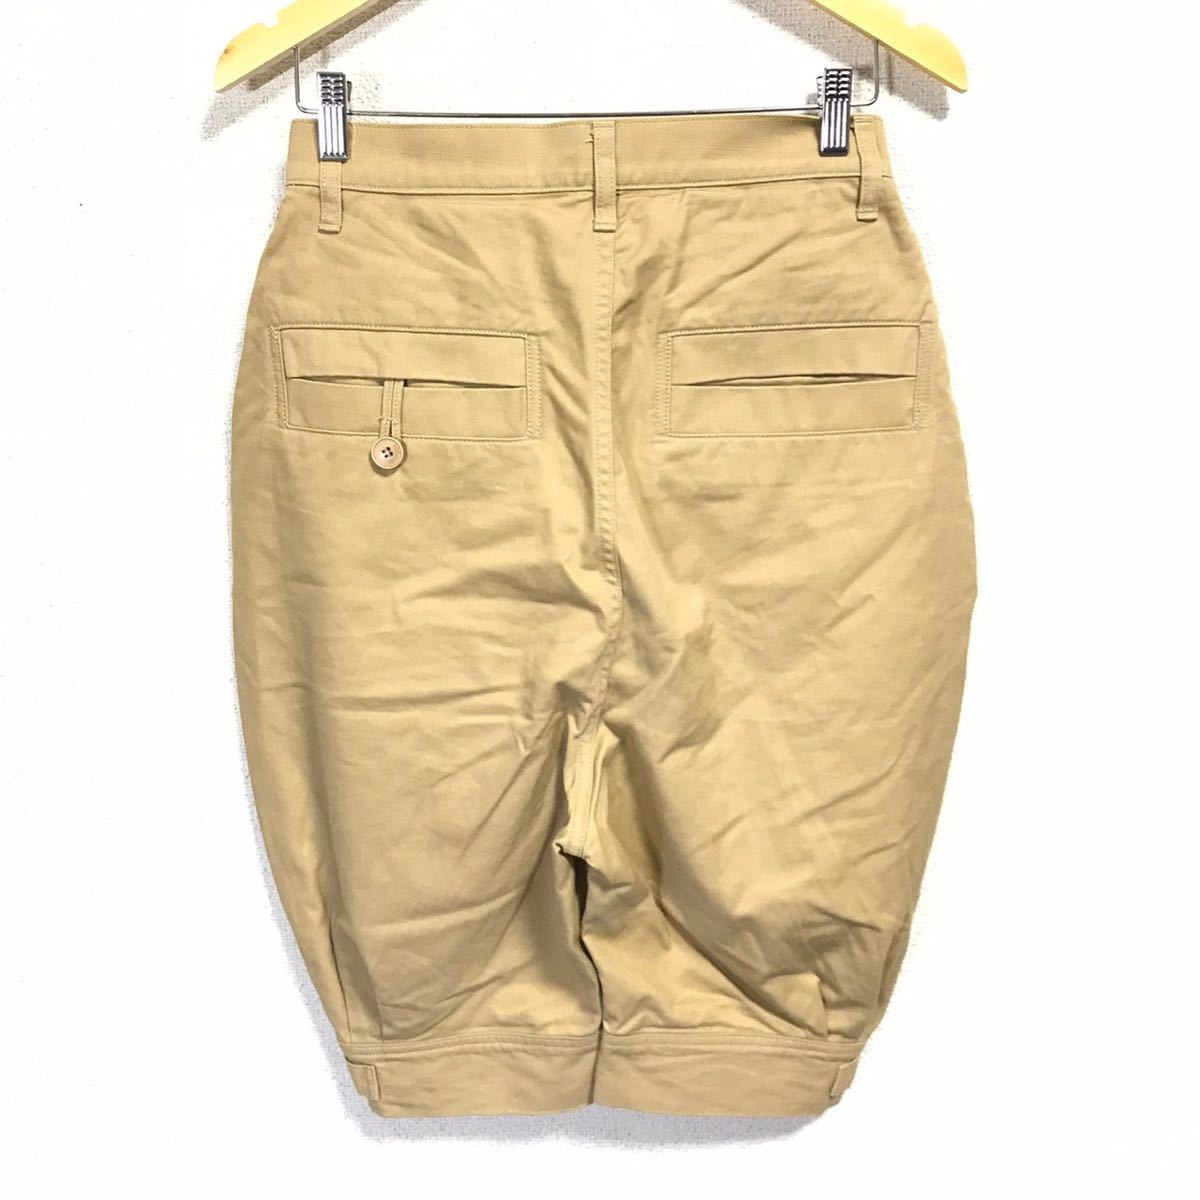 H107dh  сделано в Японии 【Ne-net（... сетка ）】 размер   1(S...)...  укороченные брюки   бежевый   мужской   шорты   